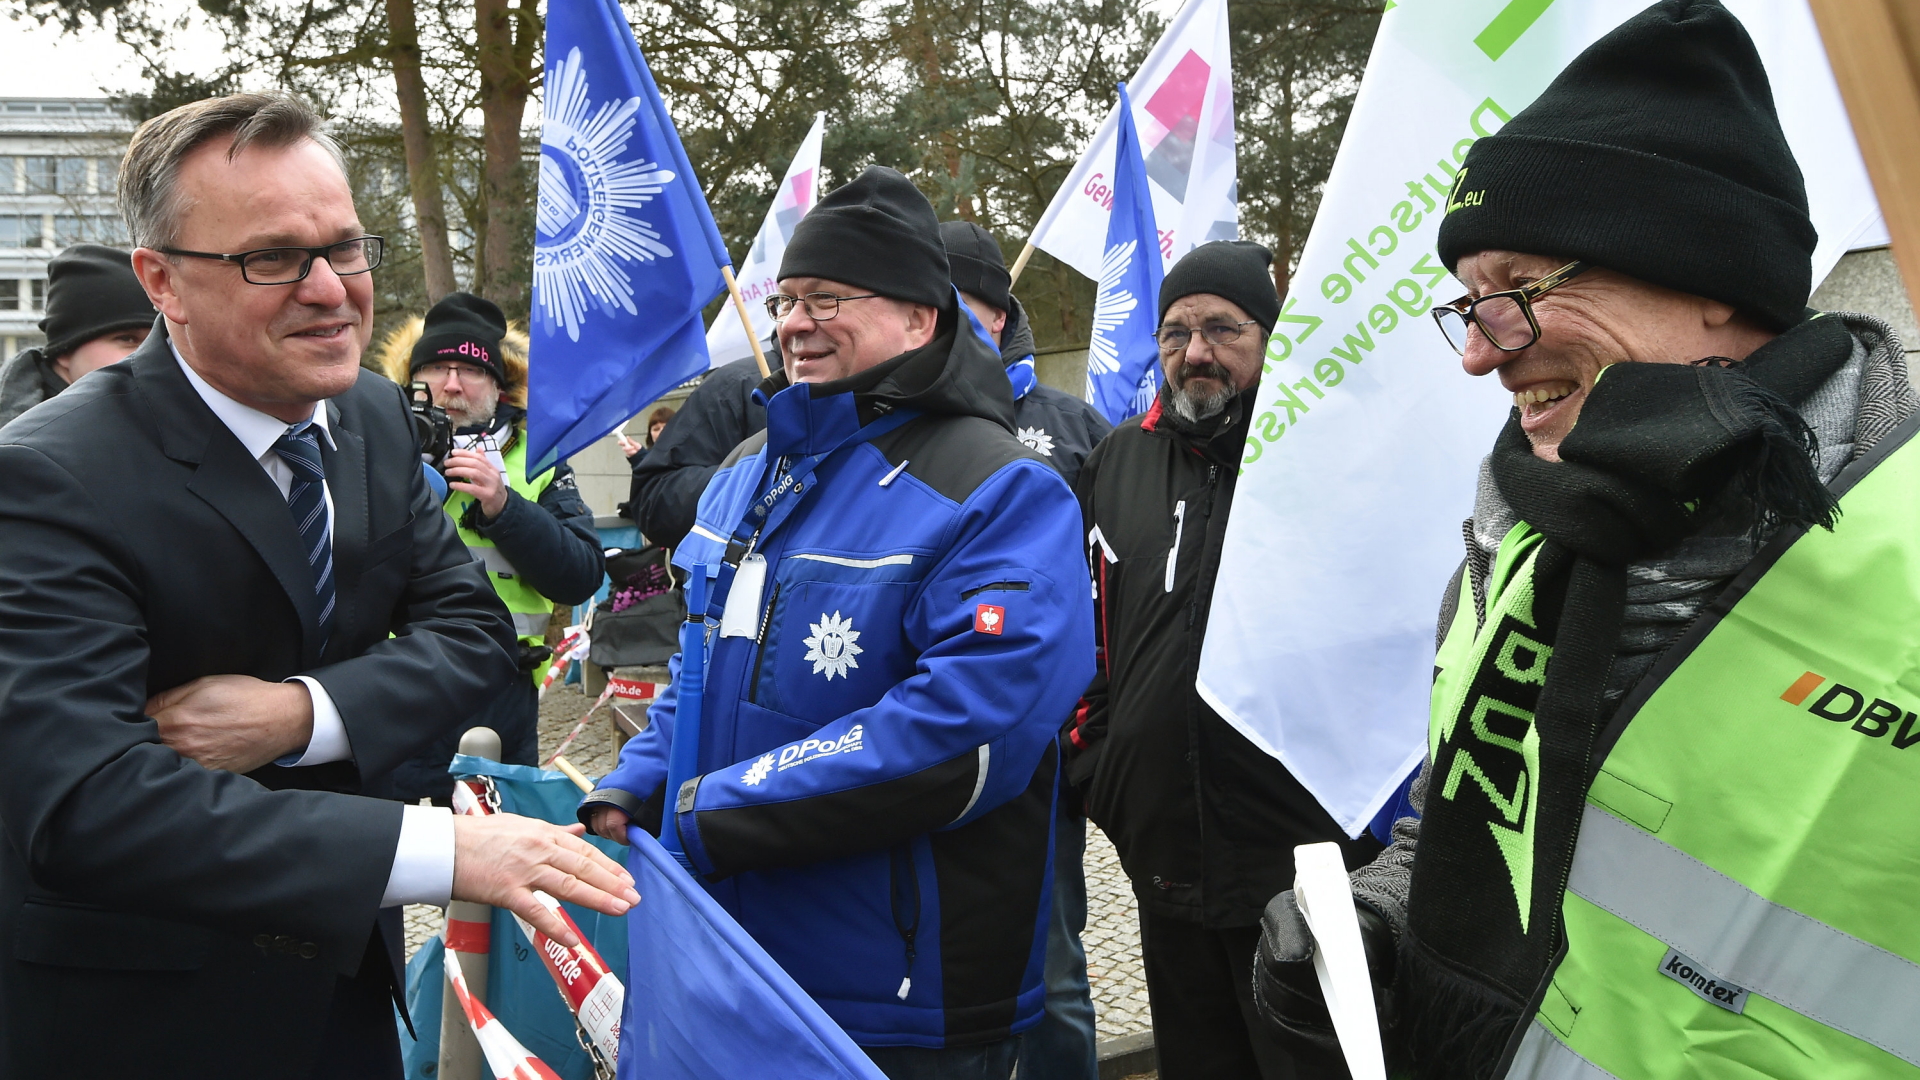 Hans-Georg Engelke, Staatssekretär im Bundesministerium des Innern, spricht mit demonstrierenden Gewerkschaftern. | dpa